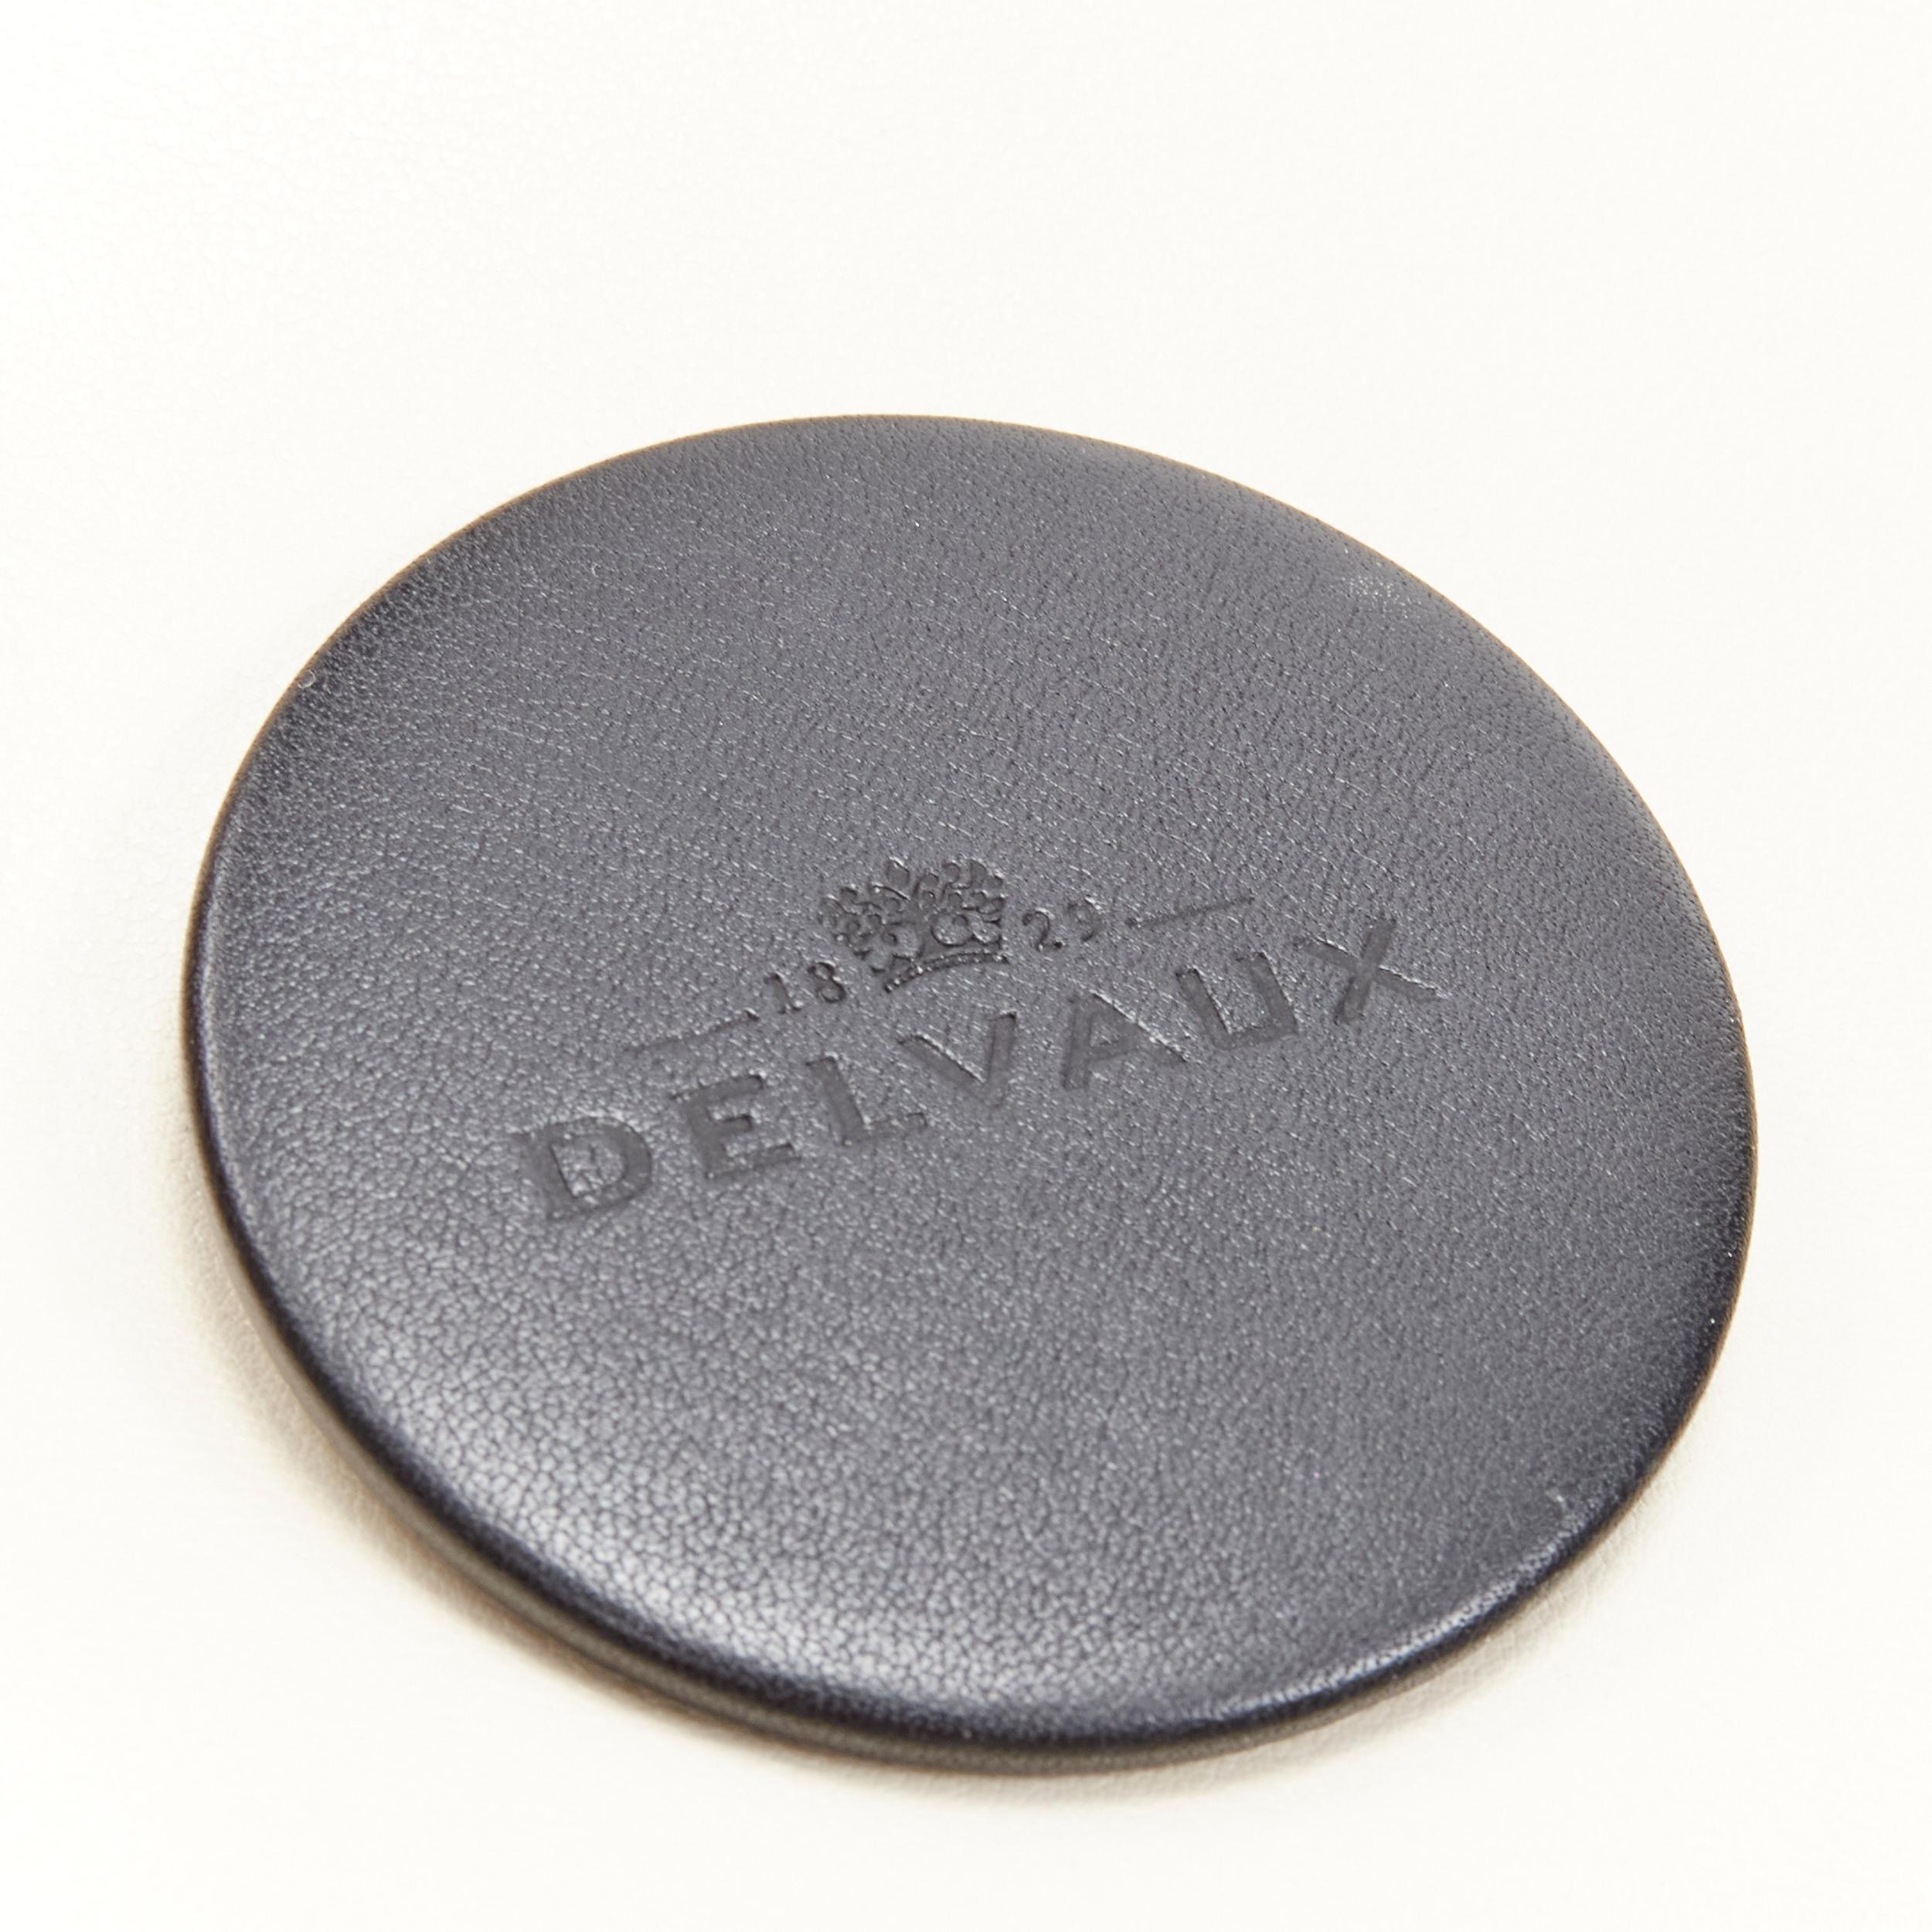 DELVAUX Tempete MM black leather white patent bicolor flap satchenl shoulder bag 1